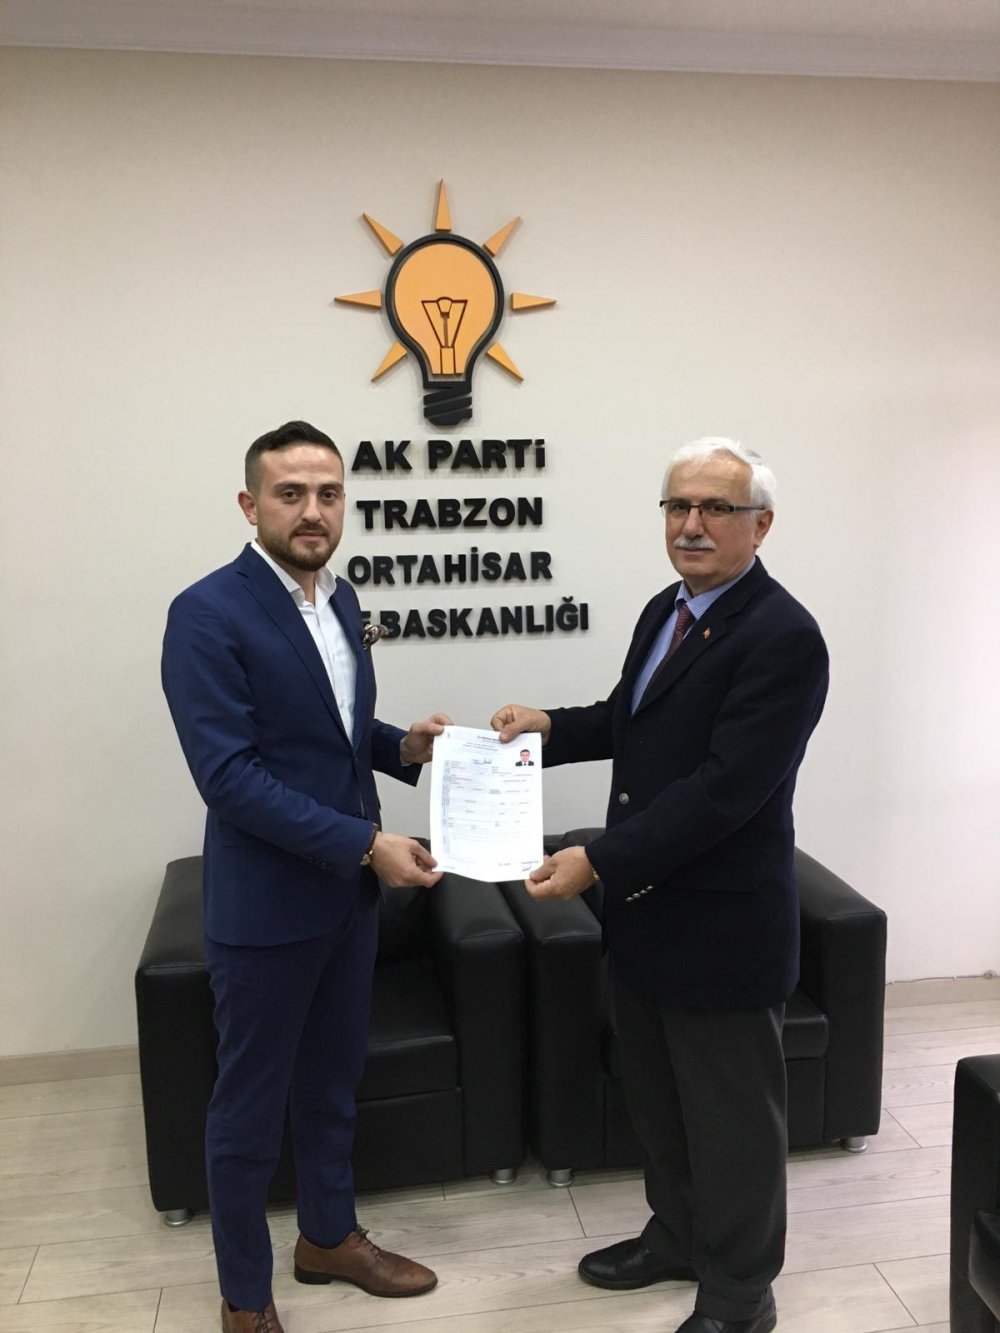 Trabzon'da Enes Baştürk başvurusunu yaptı